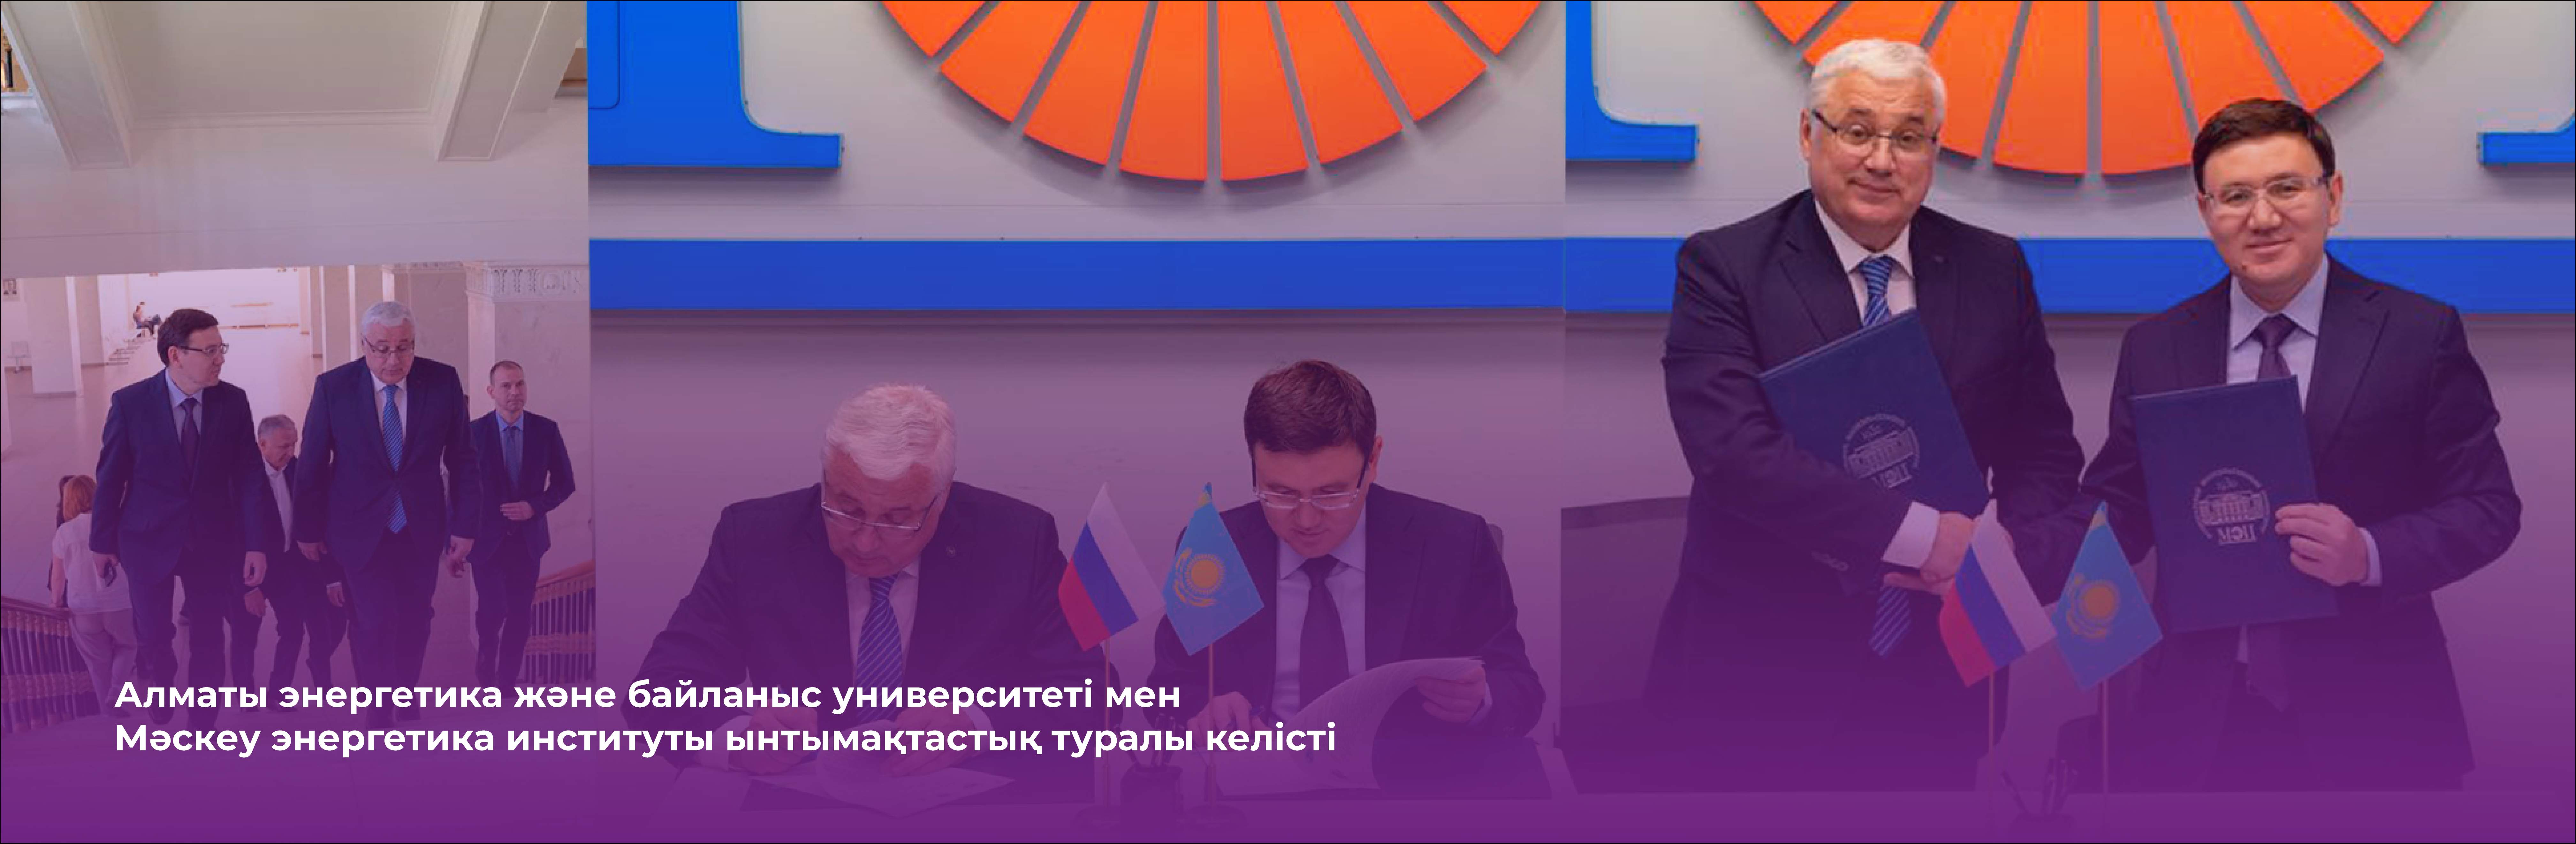 Будущих энергетиков Казахстана будут готовить совместно с Московским энергетическим институтом